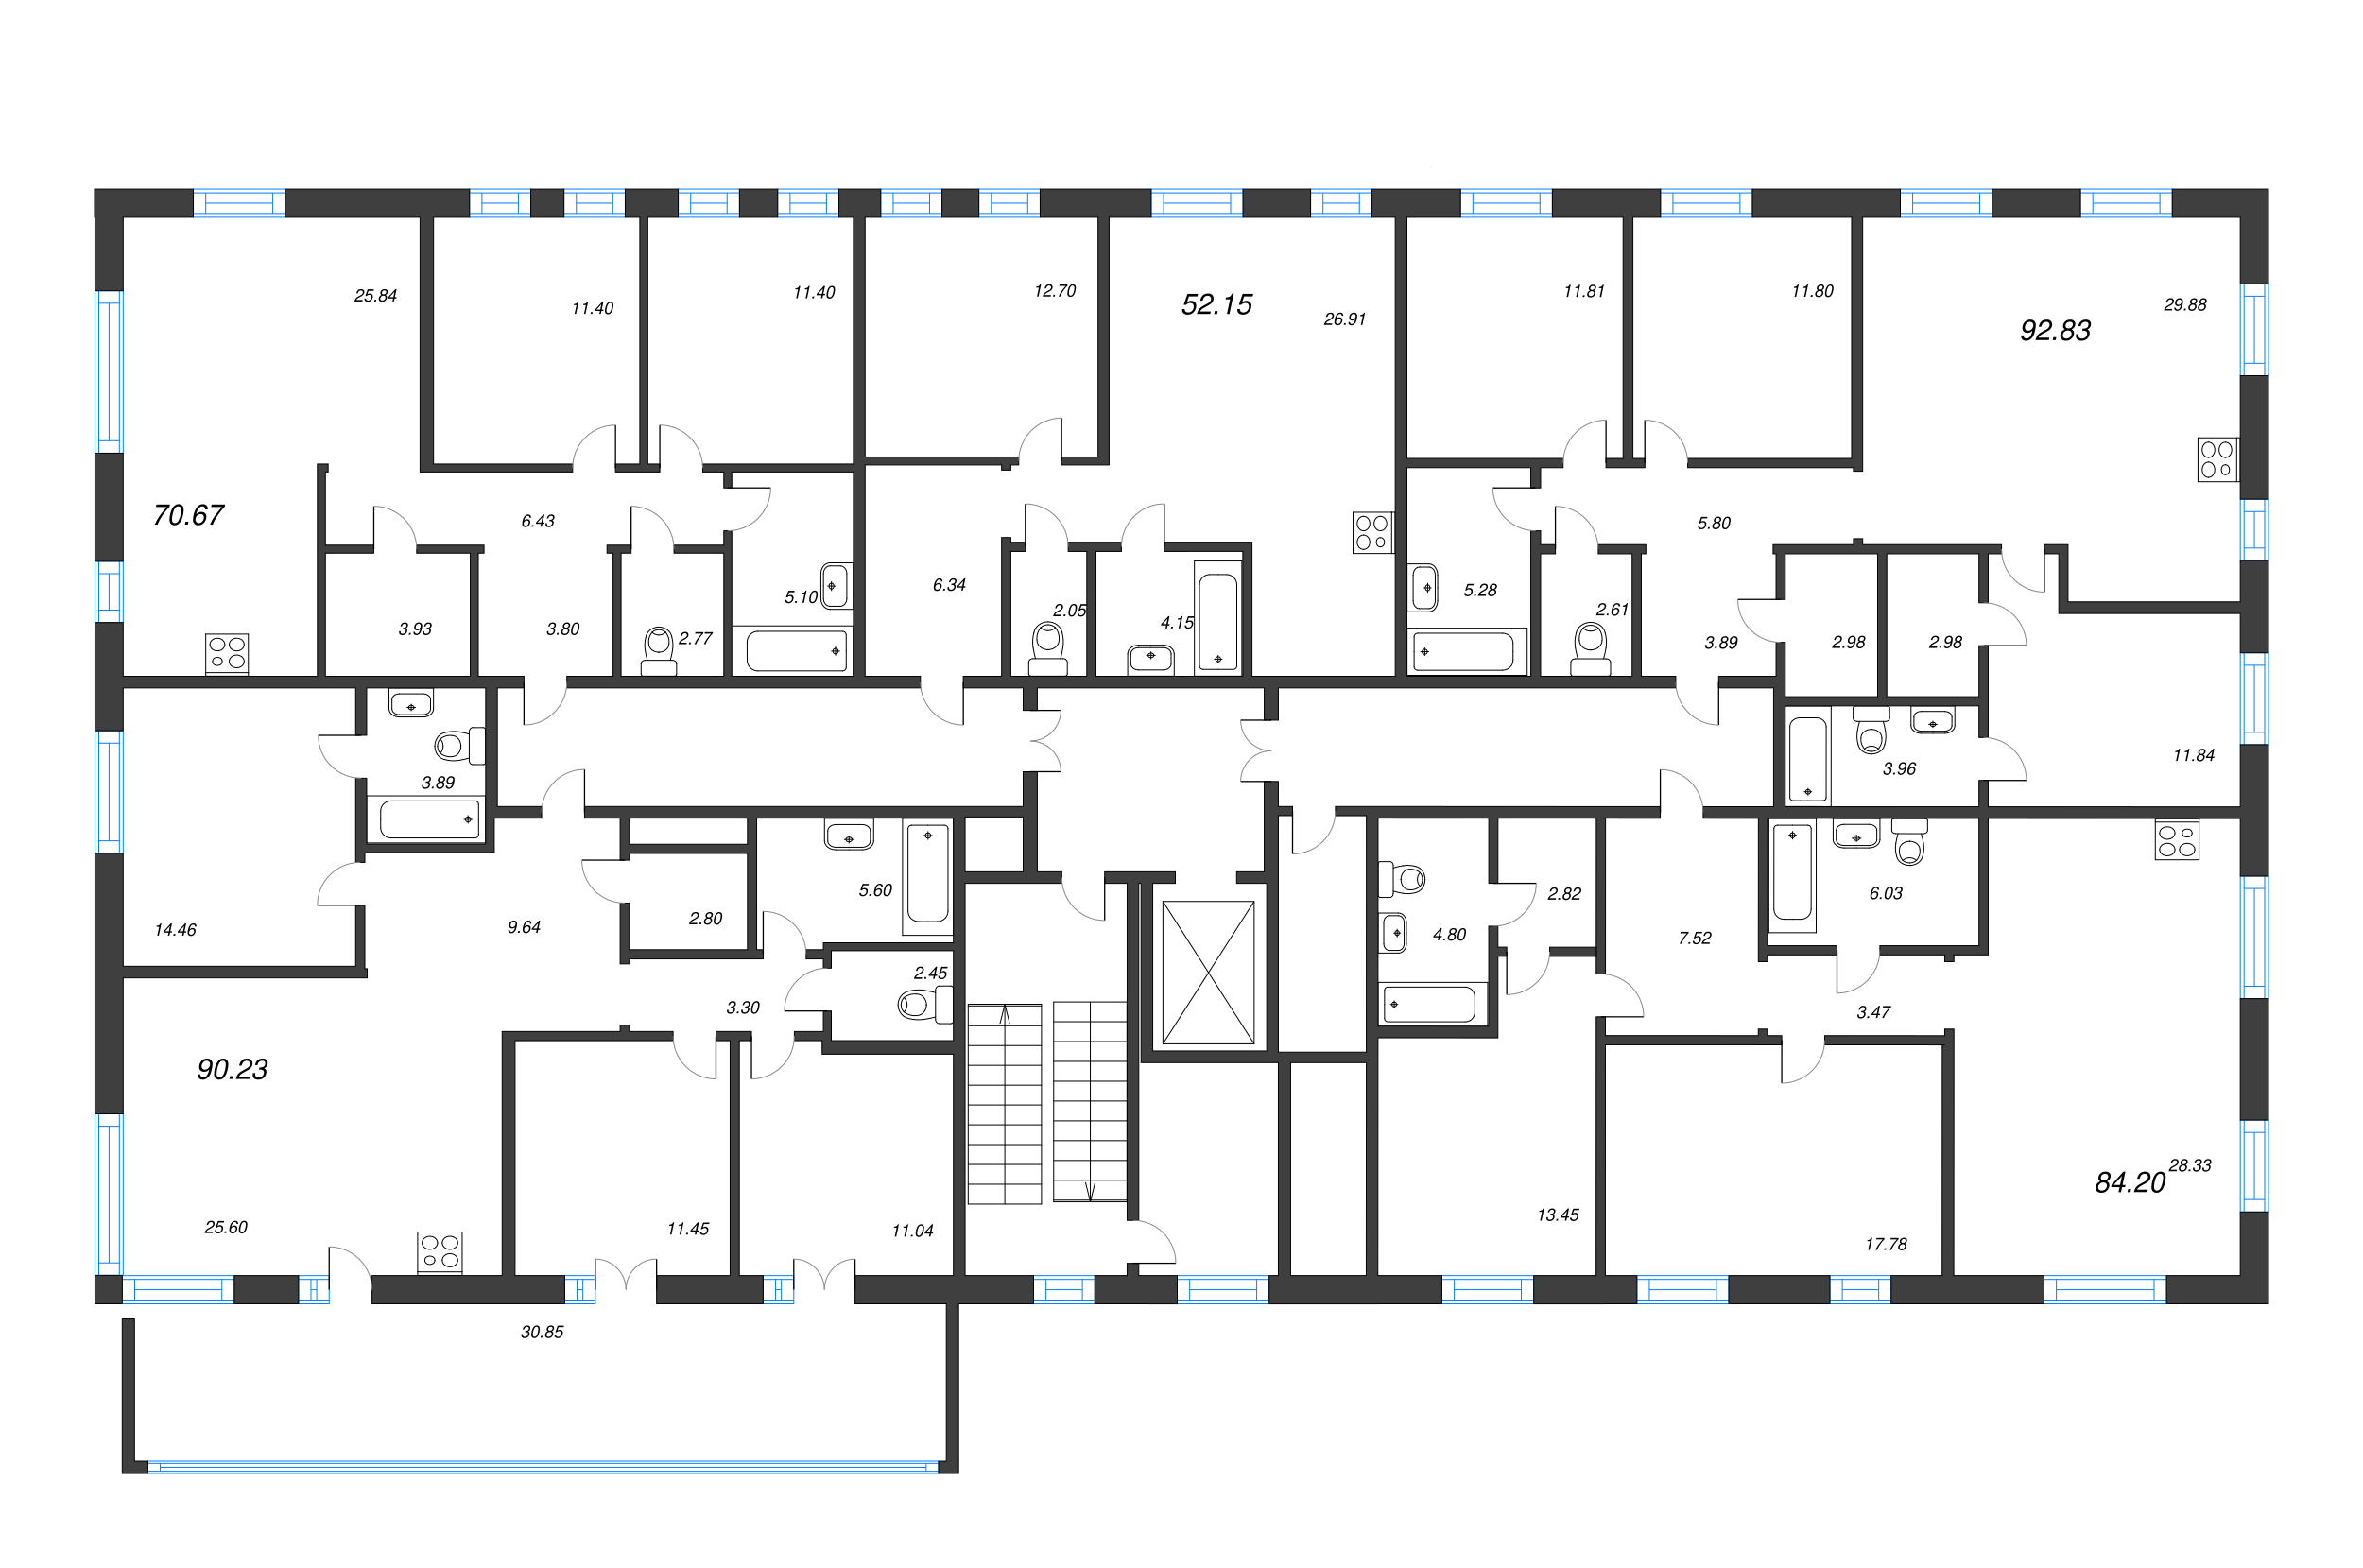 3-комнатная (Евро) квартира, 84.2 м² в ЖК "Черная речка, 41" - планировка этажа